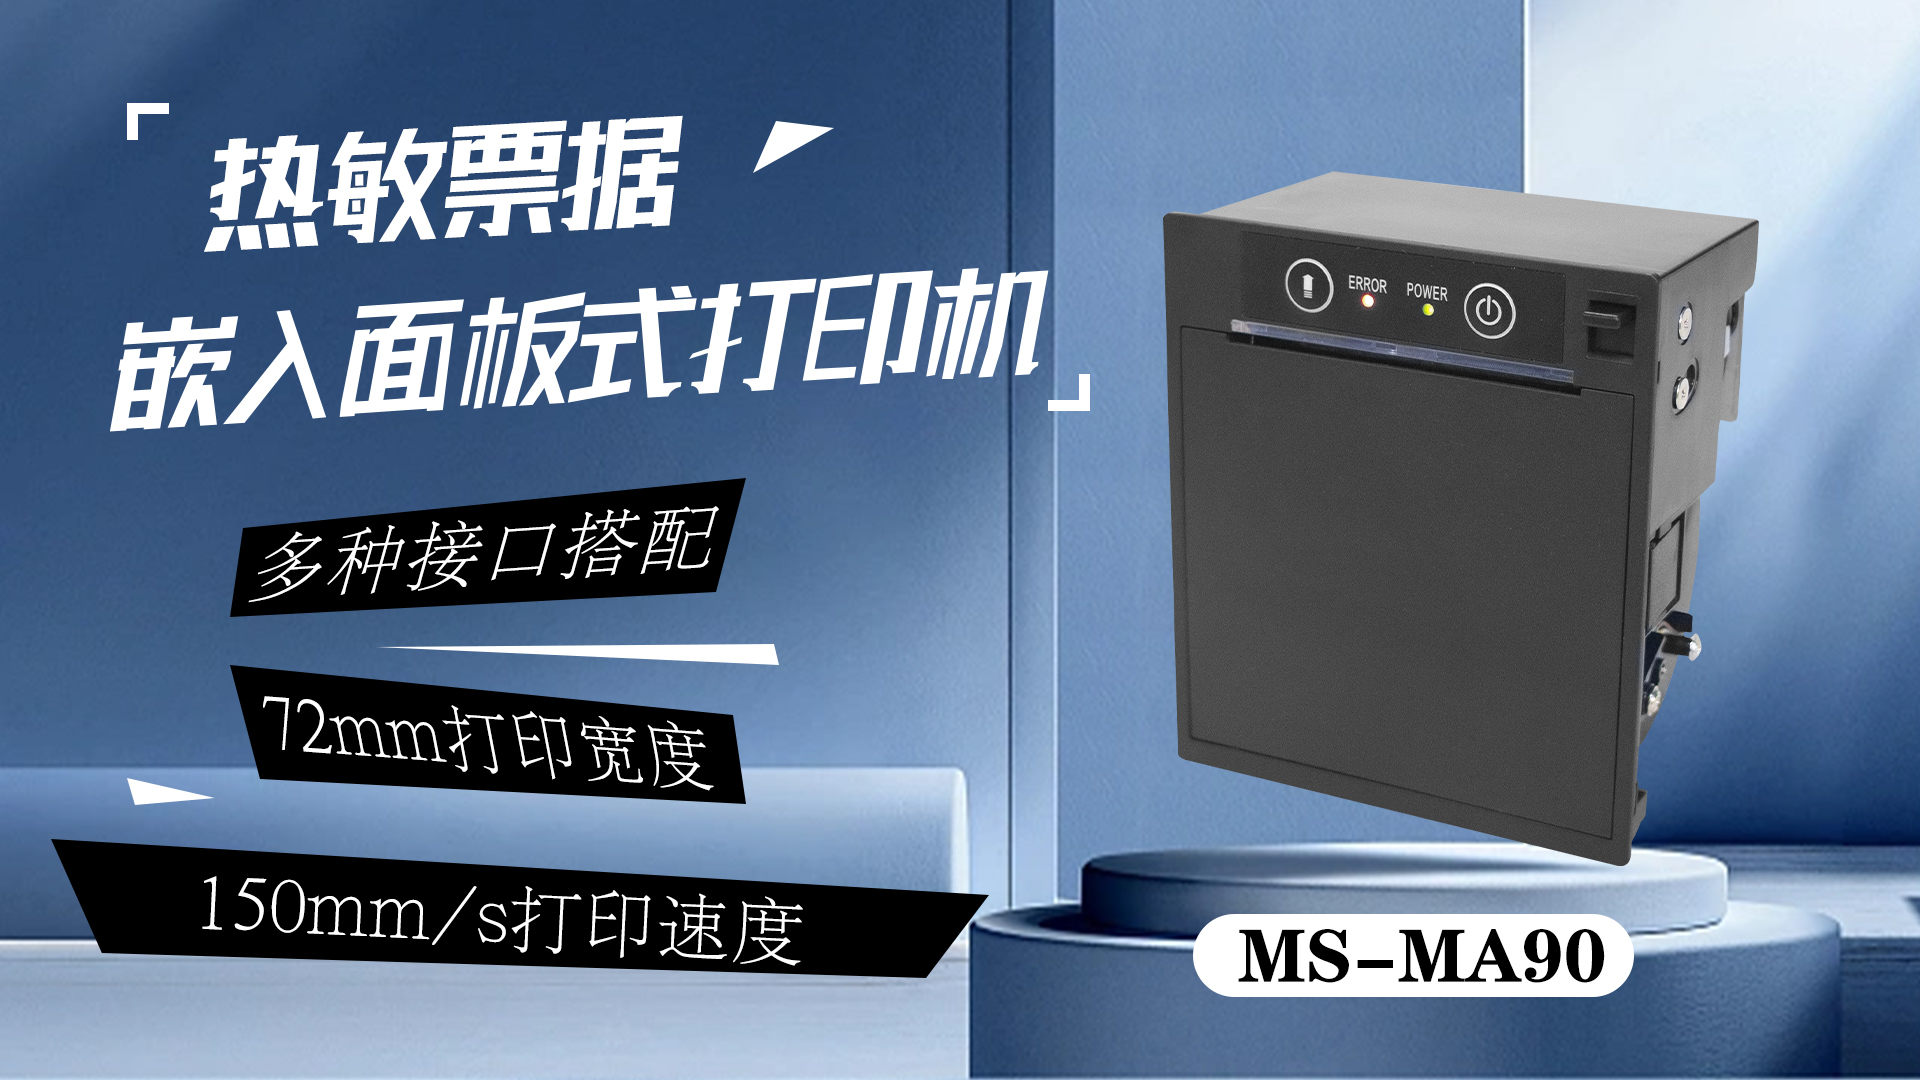 美松彩色打印机 MS-MA90 为新零售等多种行业提供解决方案